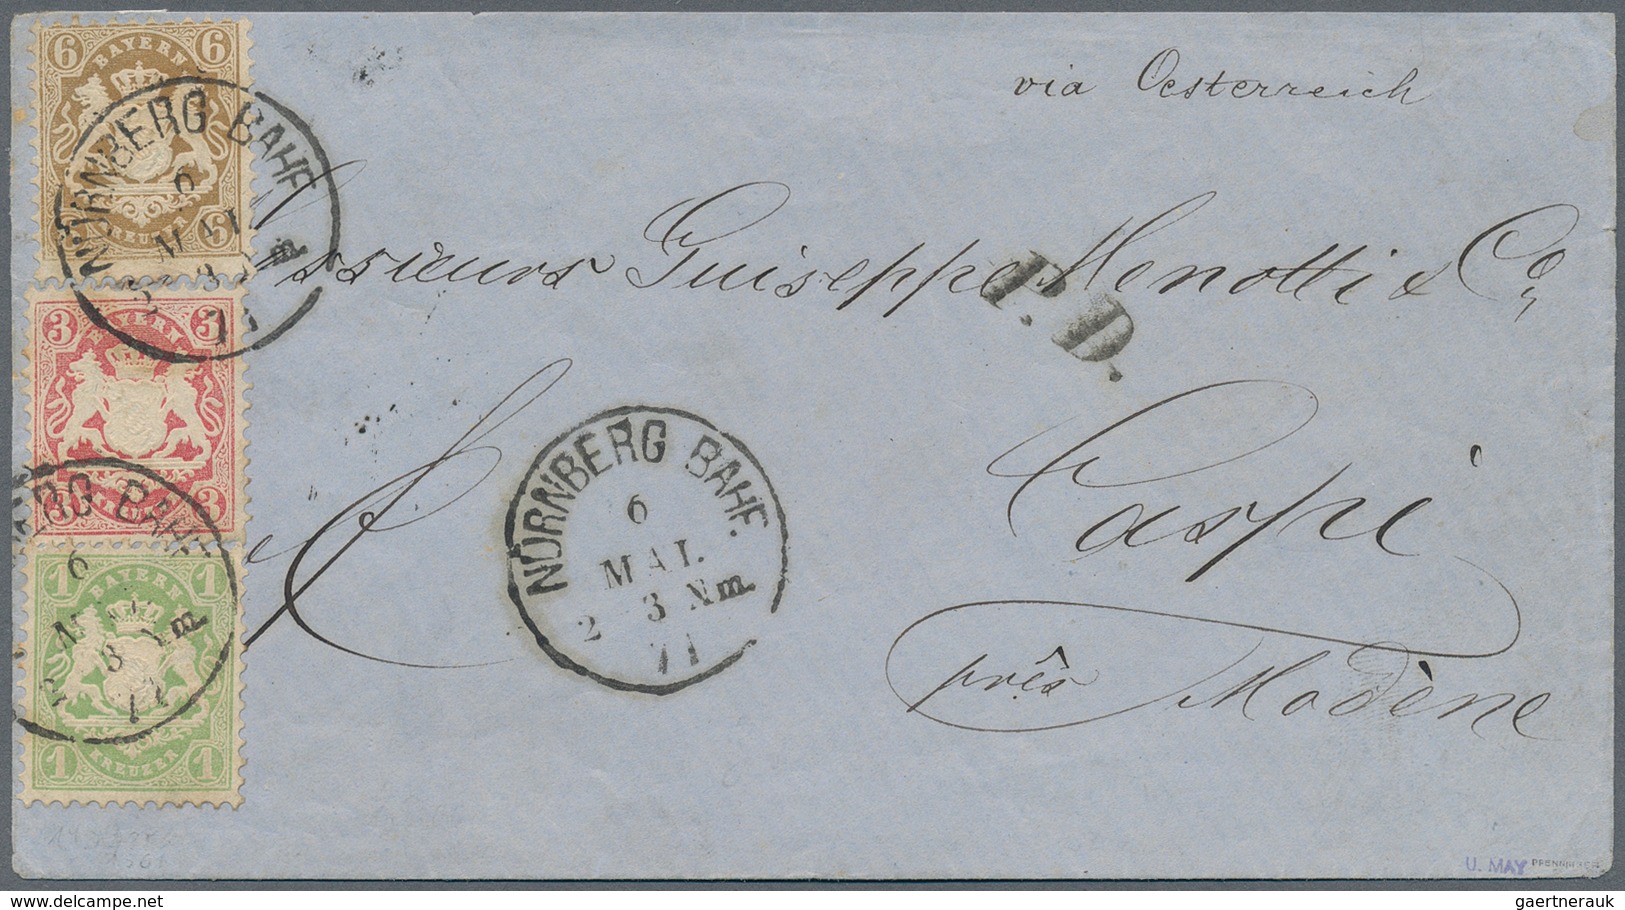 31198 Bayern - Marken und Briefe: 1850/1900 (ca.), schöner Briefposten mit sicher über 200 Belegen ab ein